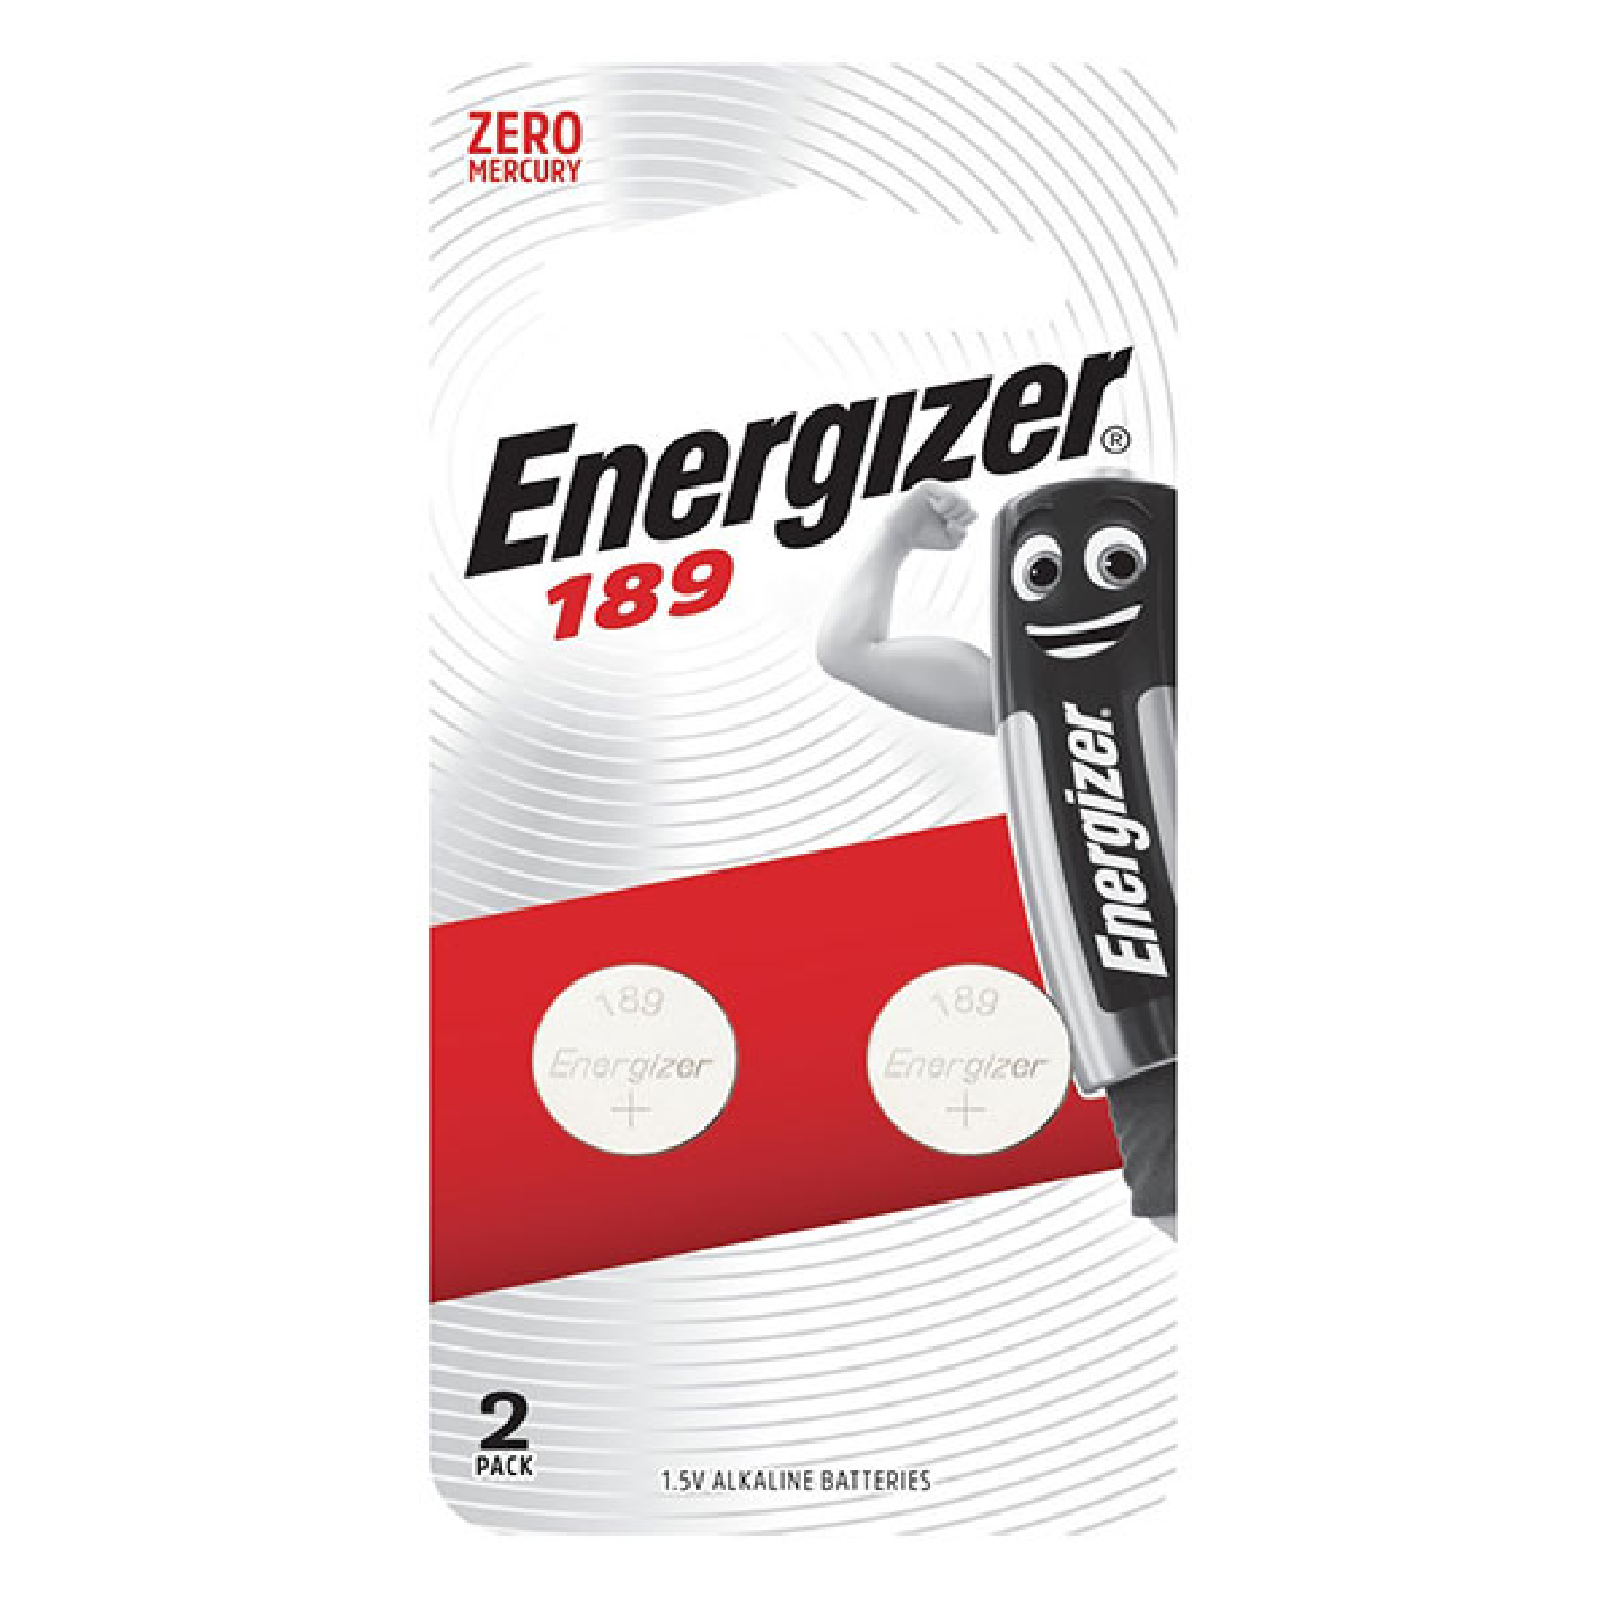 Energizer 189, LR54 Equivalent Alkaline Battery 1.5V 2PC/Pack